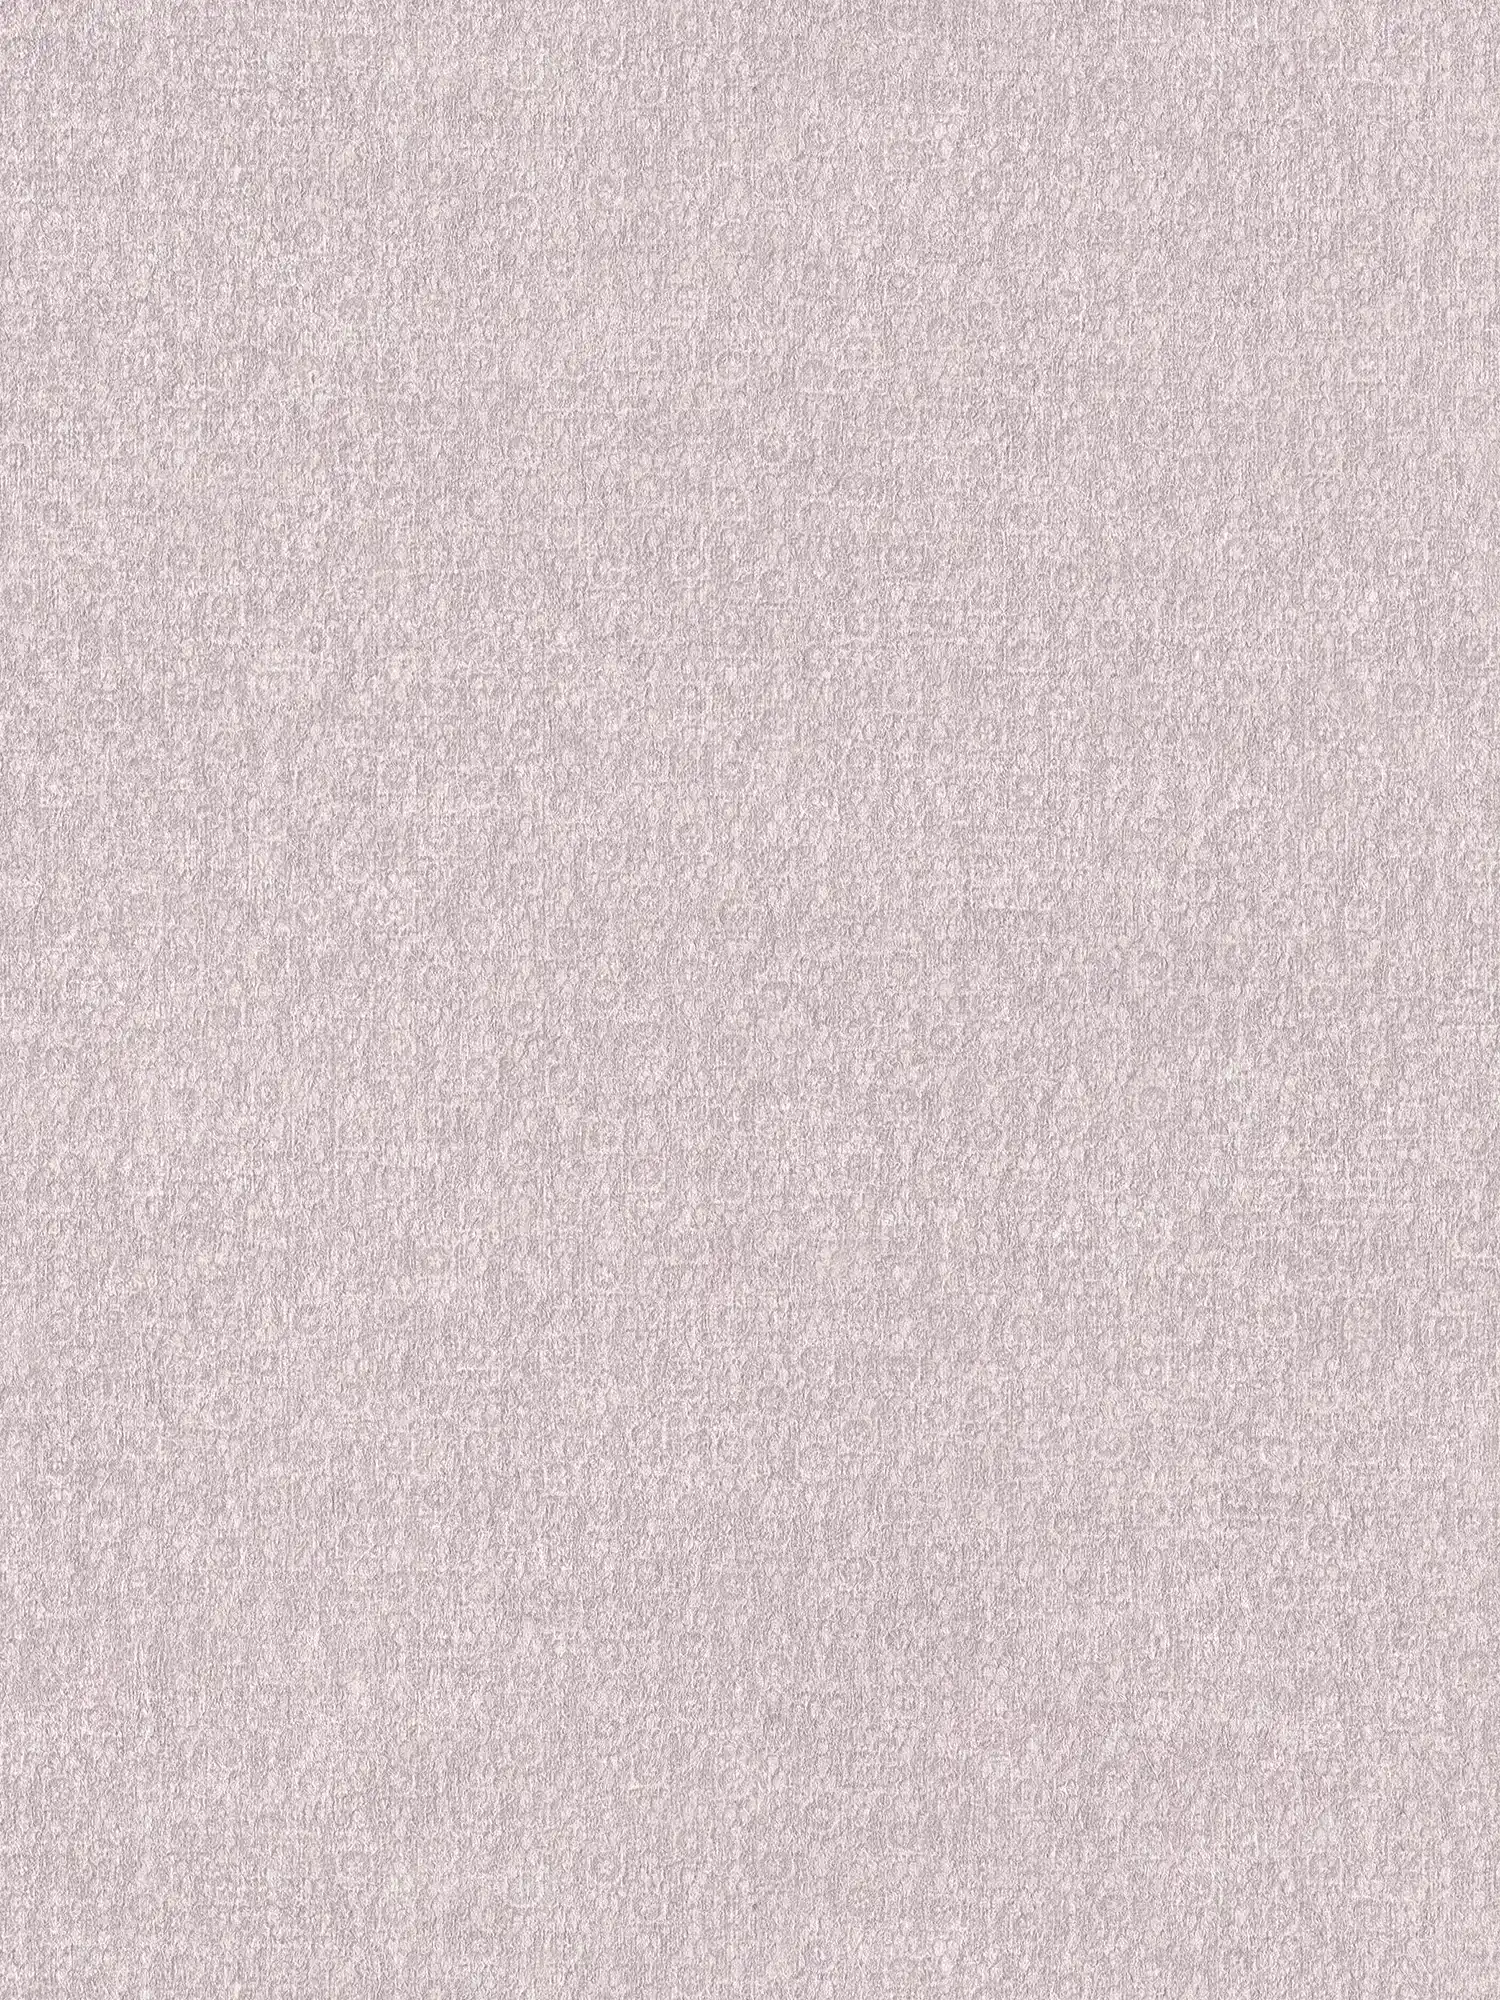 Carta da parati in tessuto non tessuto rosa con effetto texture e opacità tessile
